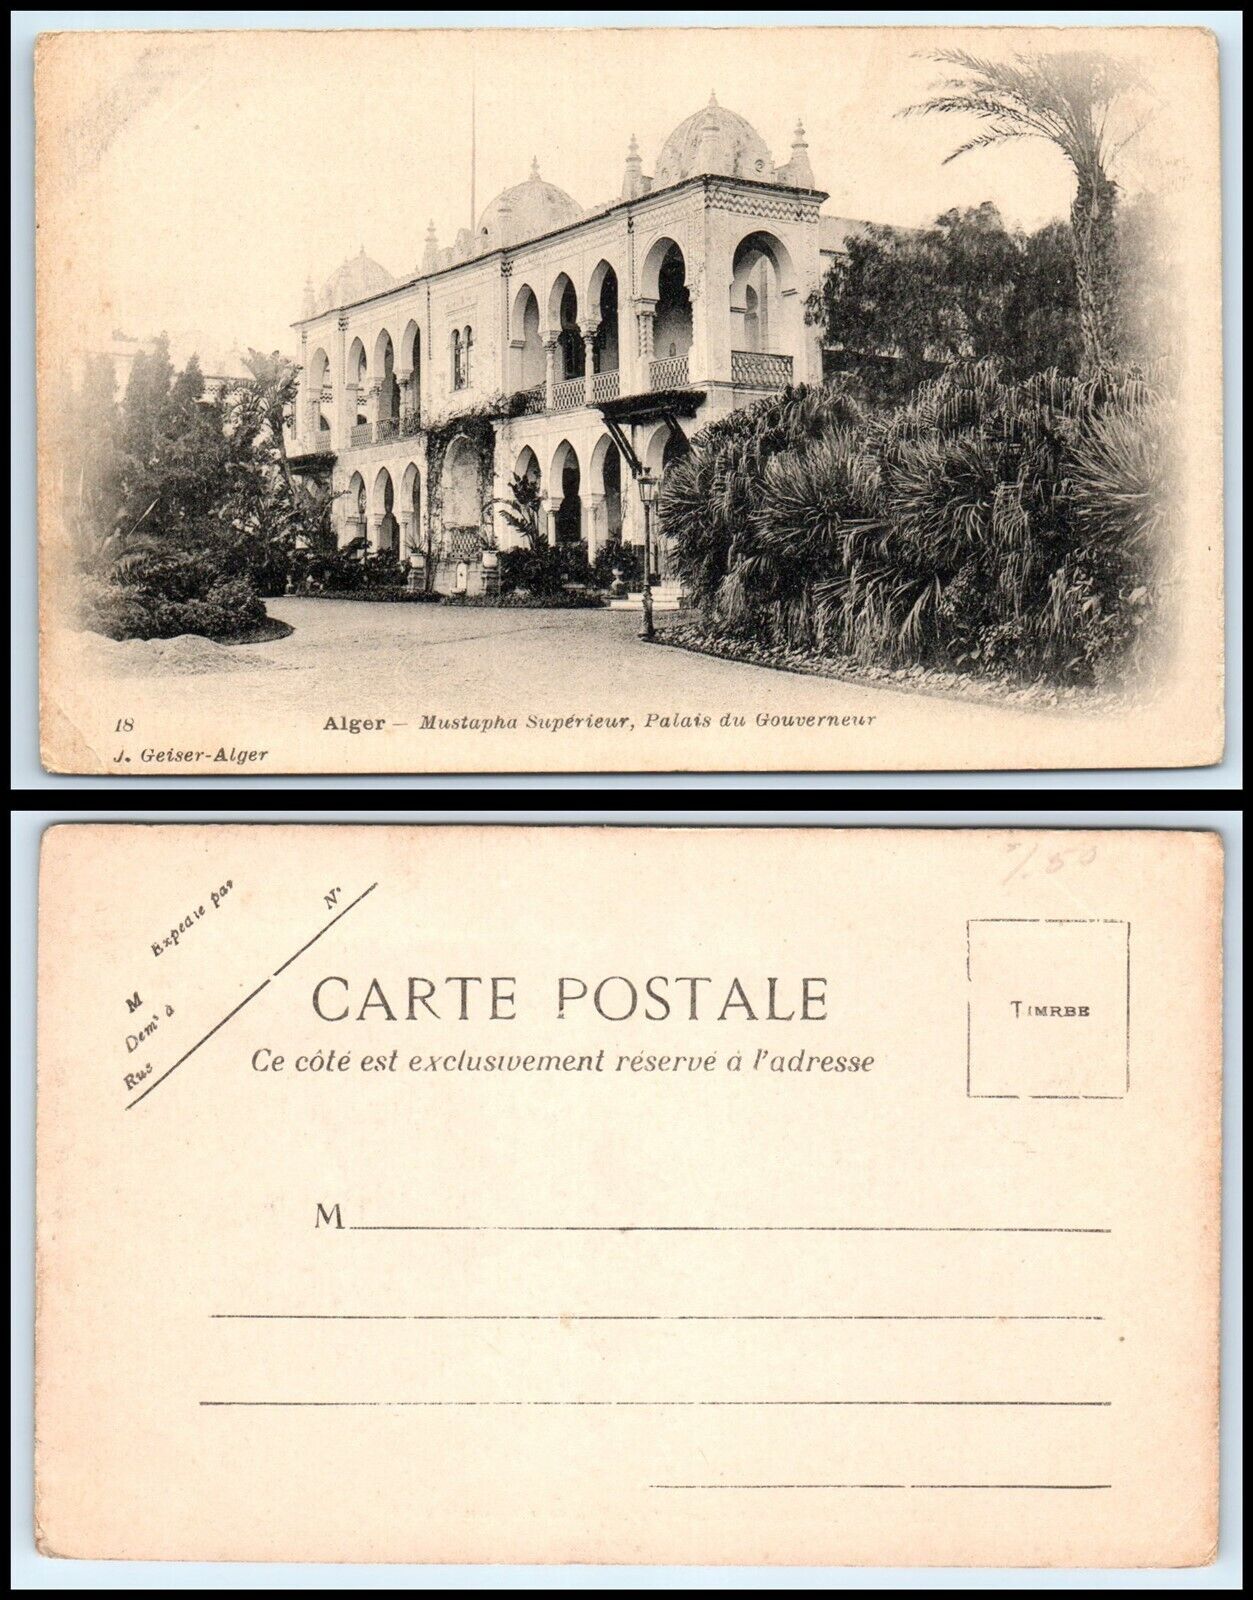 ALGERIA Postcard - Mustapha superieur, Palais du Gouverneur D31